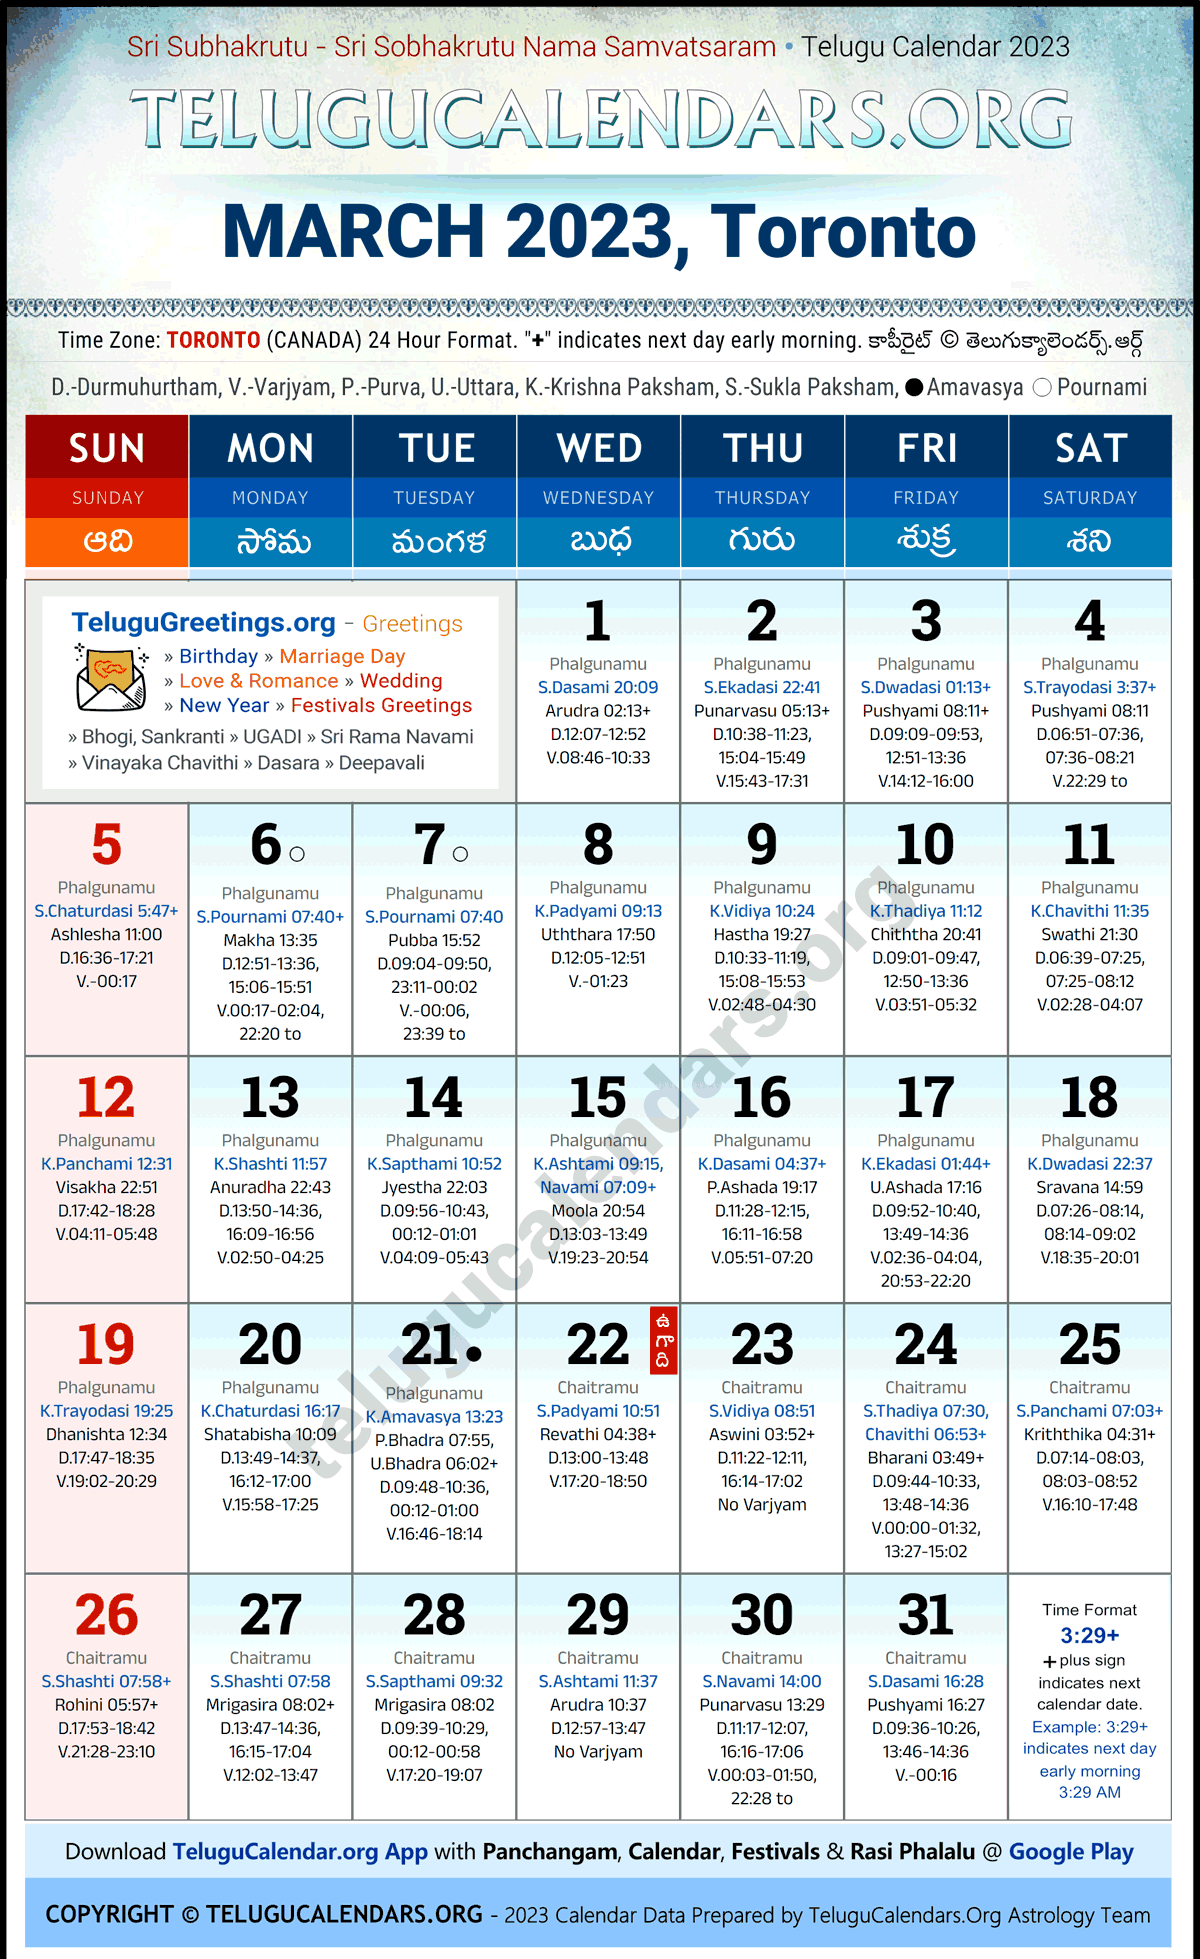 Telugu Calendar 2023 March Festivals for Toronto